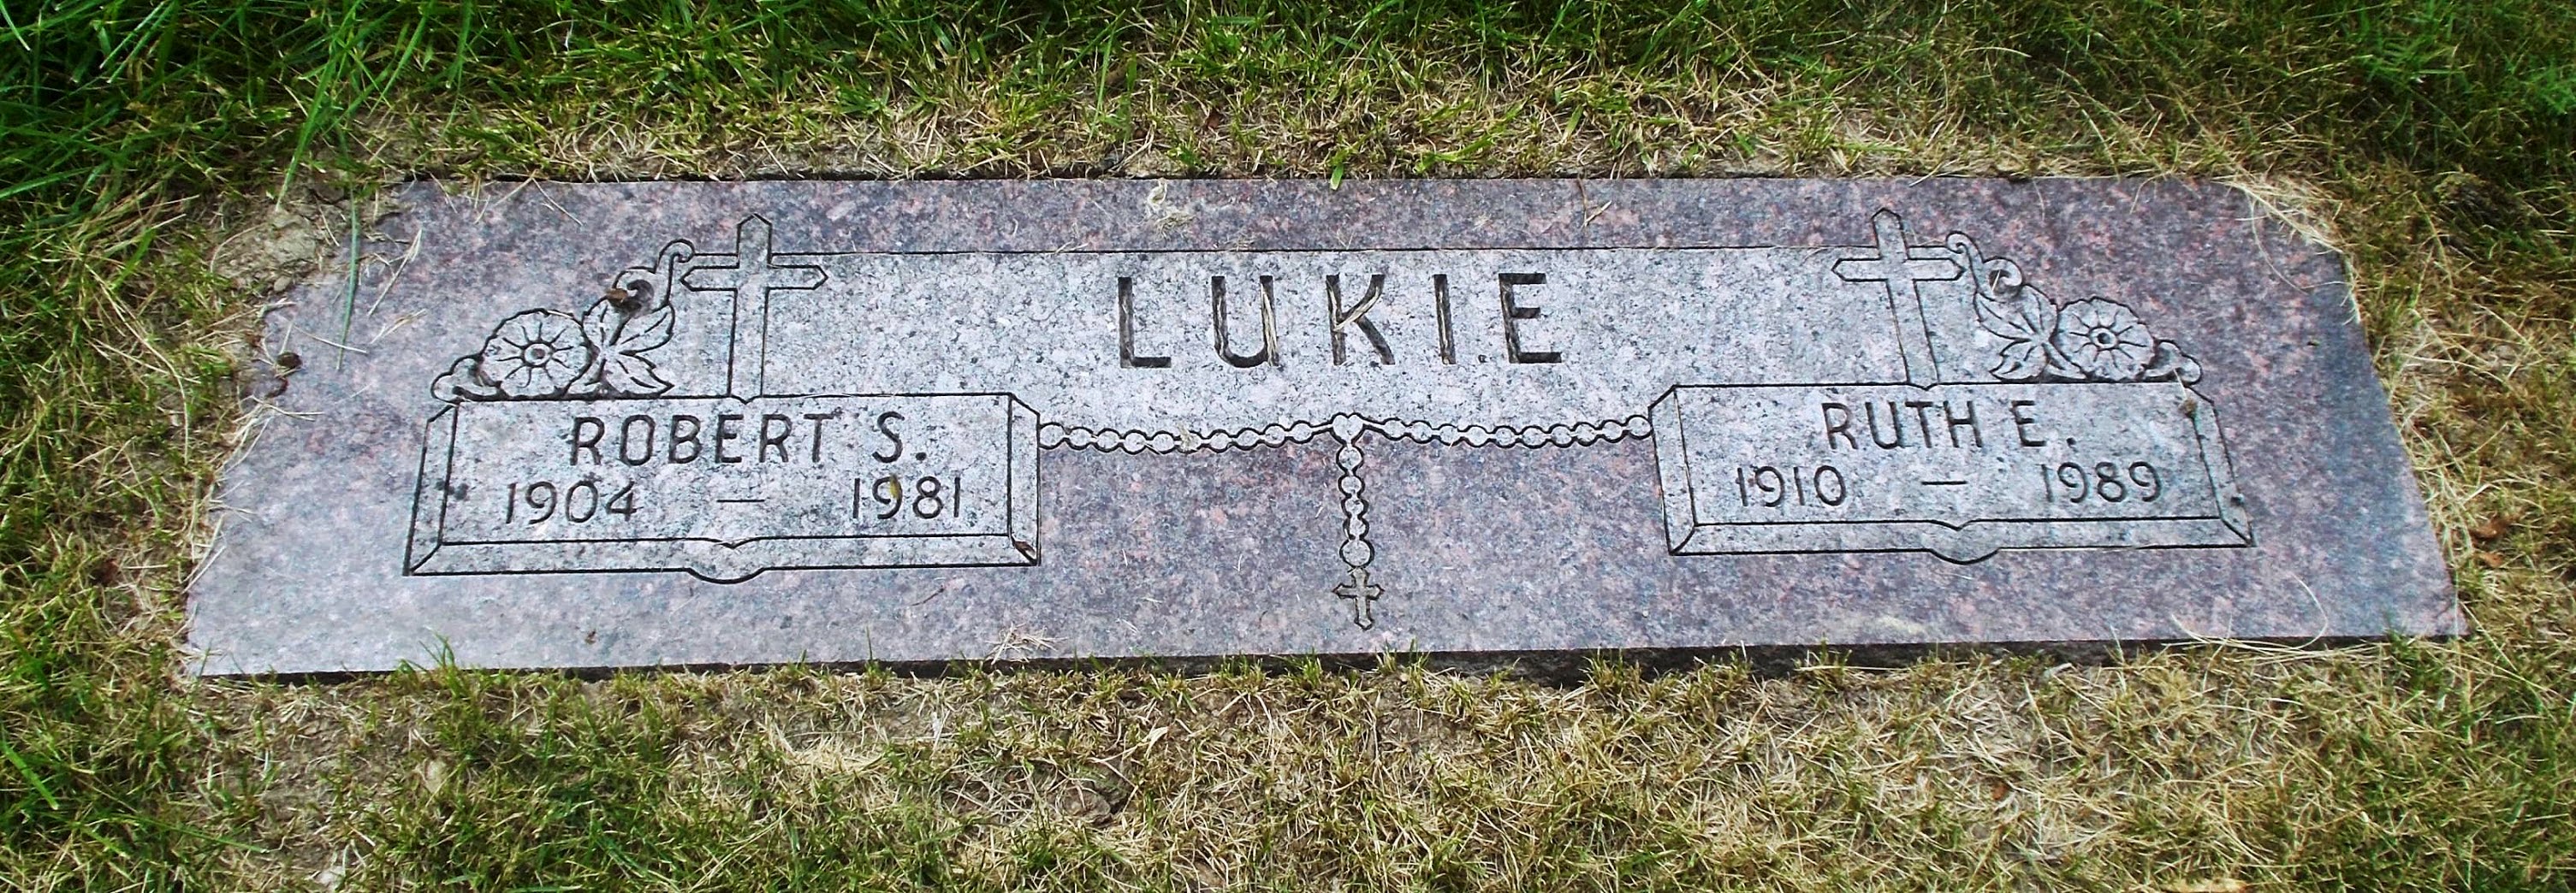 Ruth E Lukie